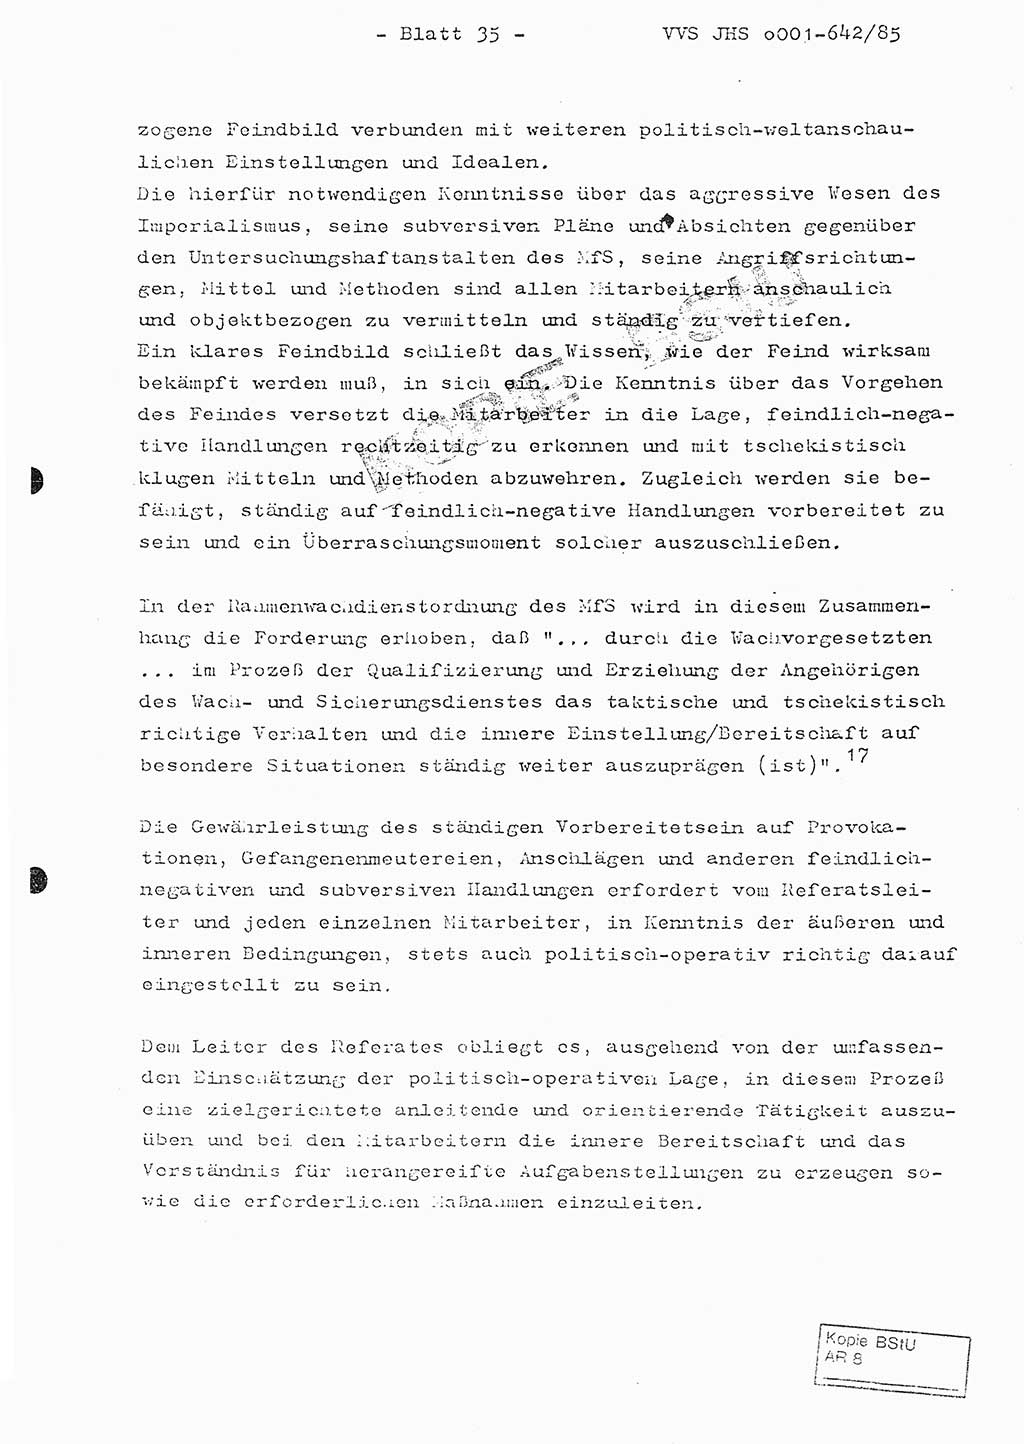 Fachschulabschlußarbeit Oberleutnant Lothar Fahland (Abt. ⅩⅣ), Ministerium für Staatssicherheit (MfS) [Deutsche Demokratische Republik (DDR)], Juristische Hochschule (JHS), Vertrauliche Verschlußsache (VVS) o001-642/85, Potsdam 1985, Blatt 35 (FS-Abschl.-Arb. MfS DDR JHS VVS o001-642/85 1985, Bl. 35)